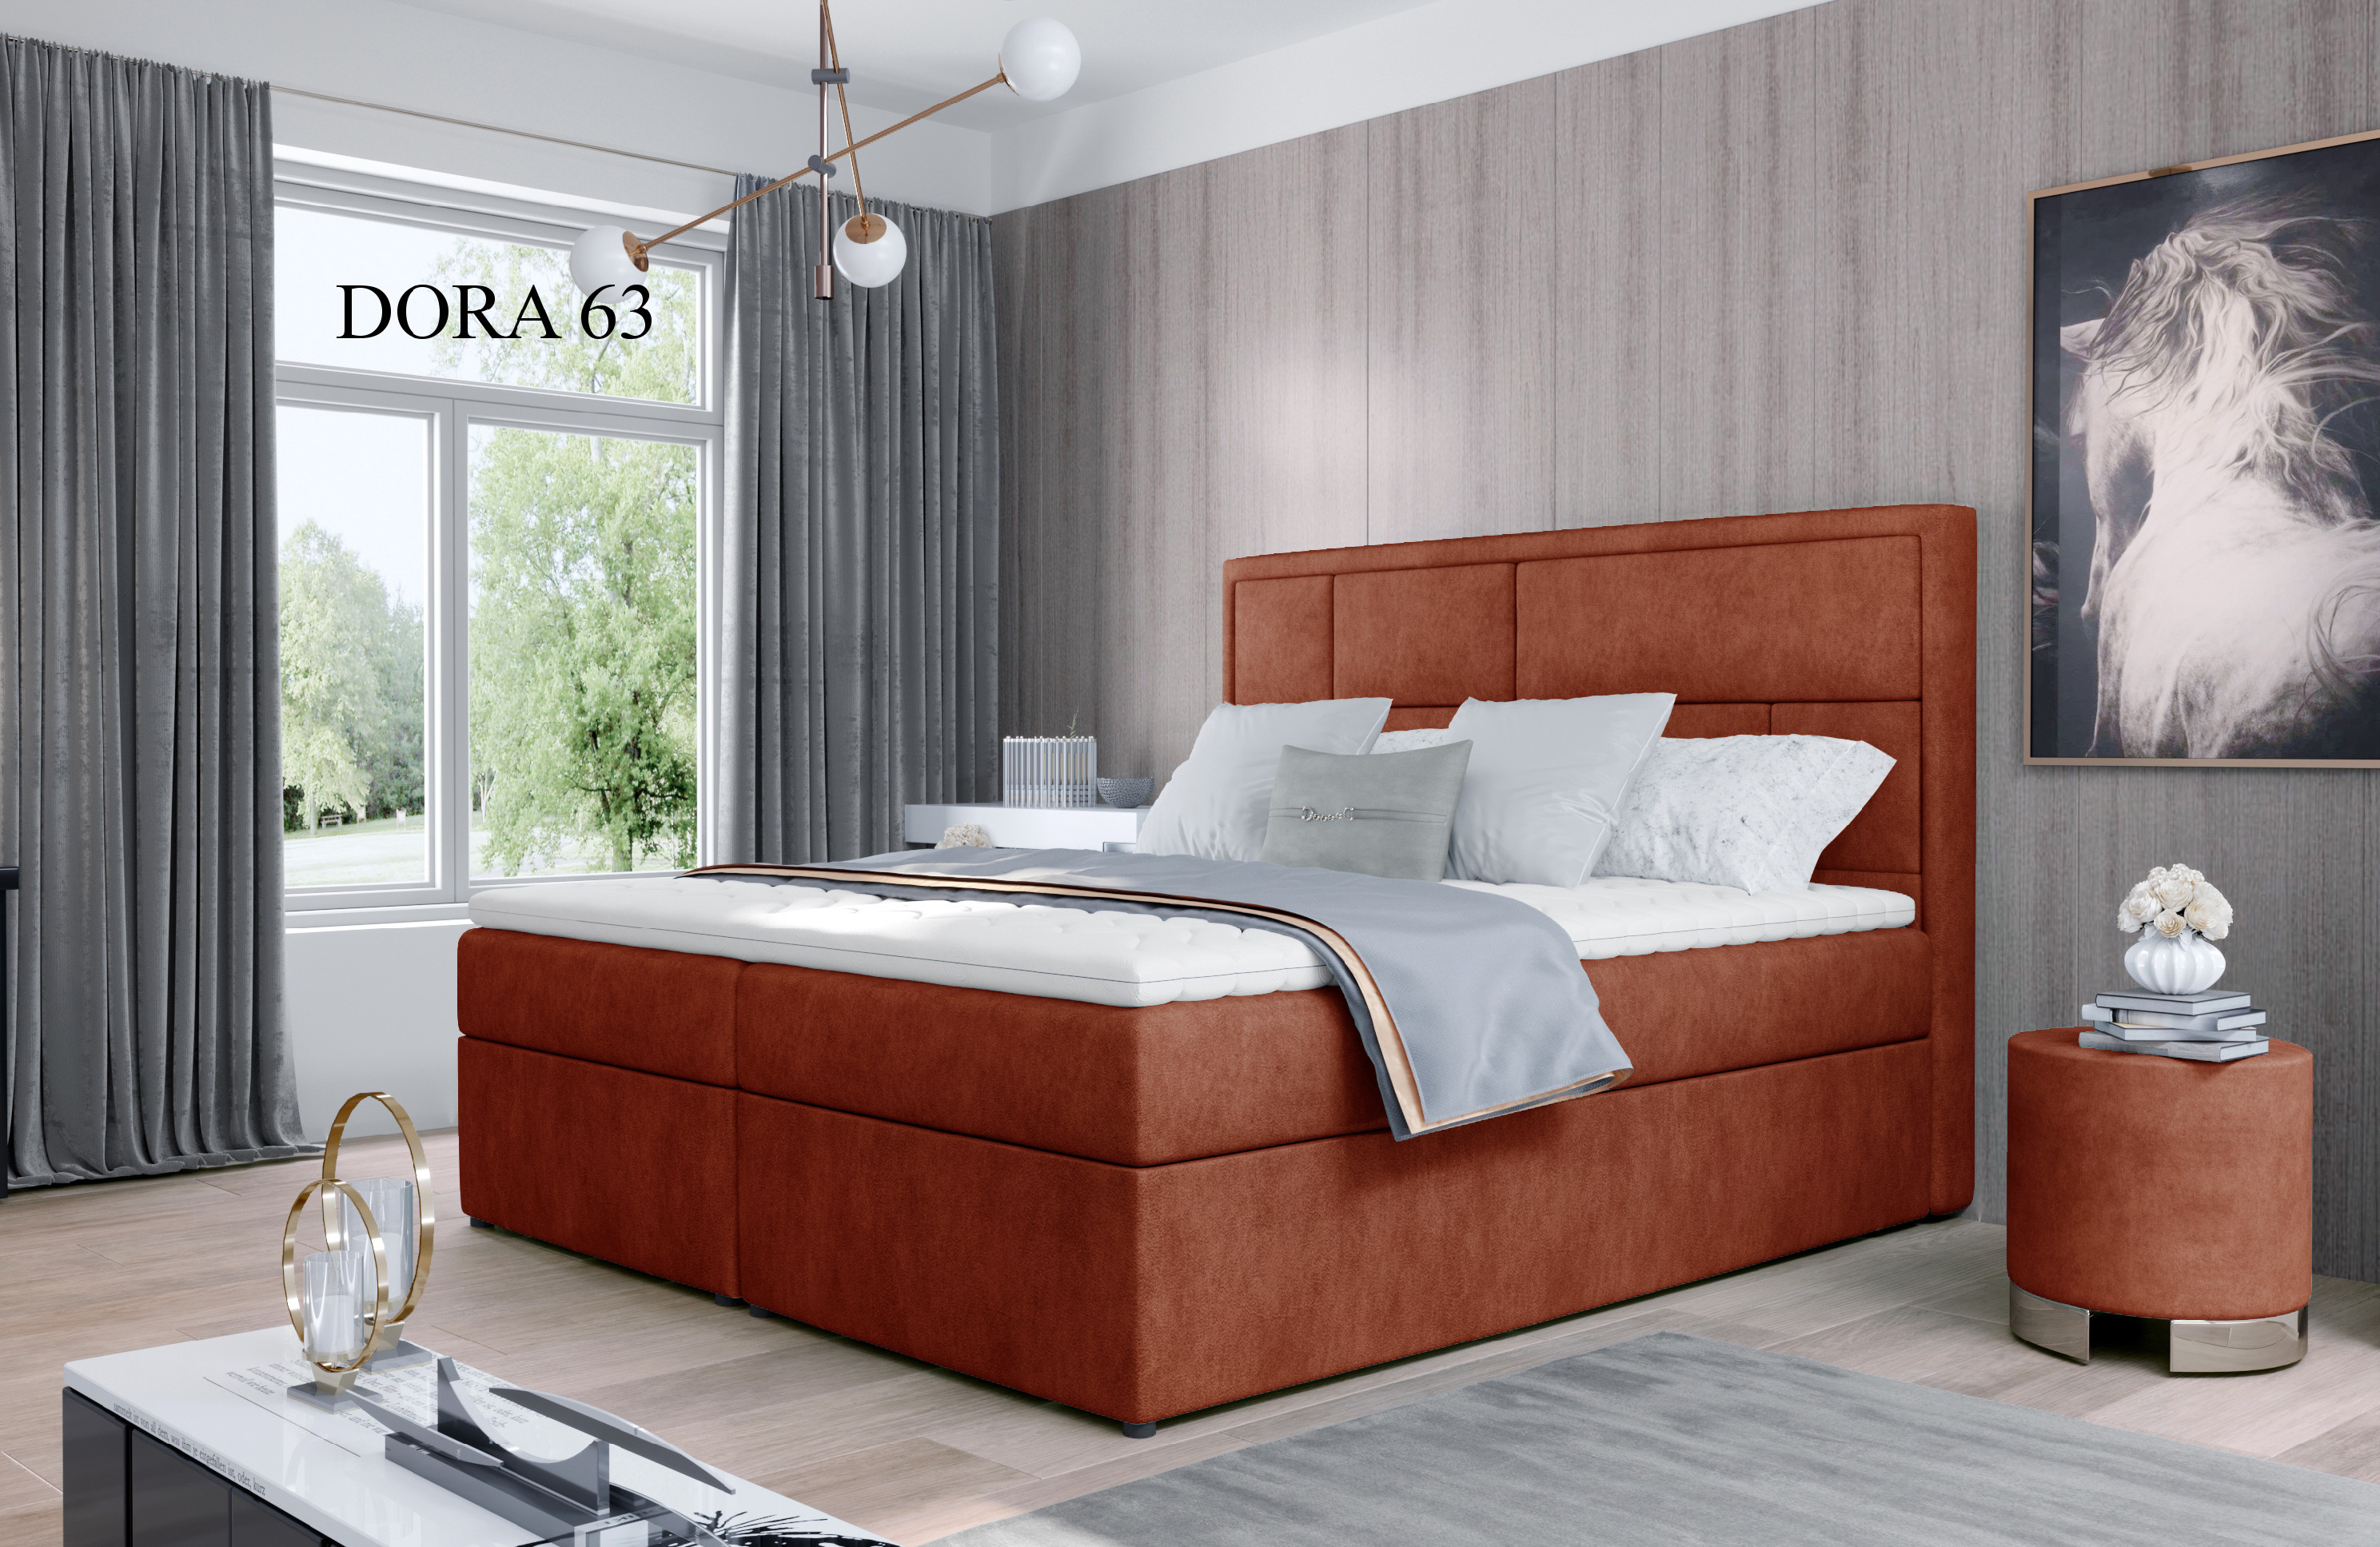 Čalouněná postel MERON Boxsprings 180 x 200 cm Provedení: Dora 63